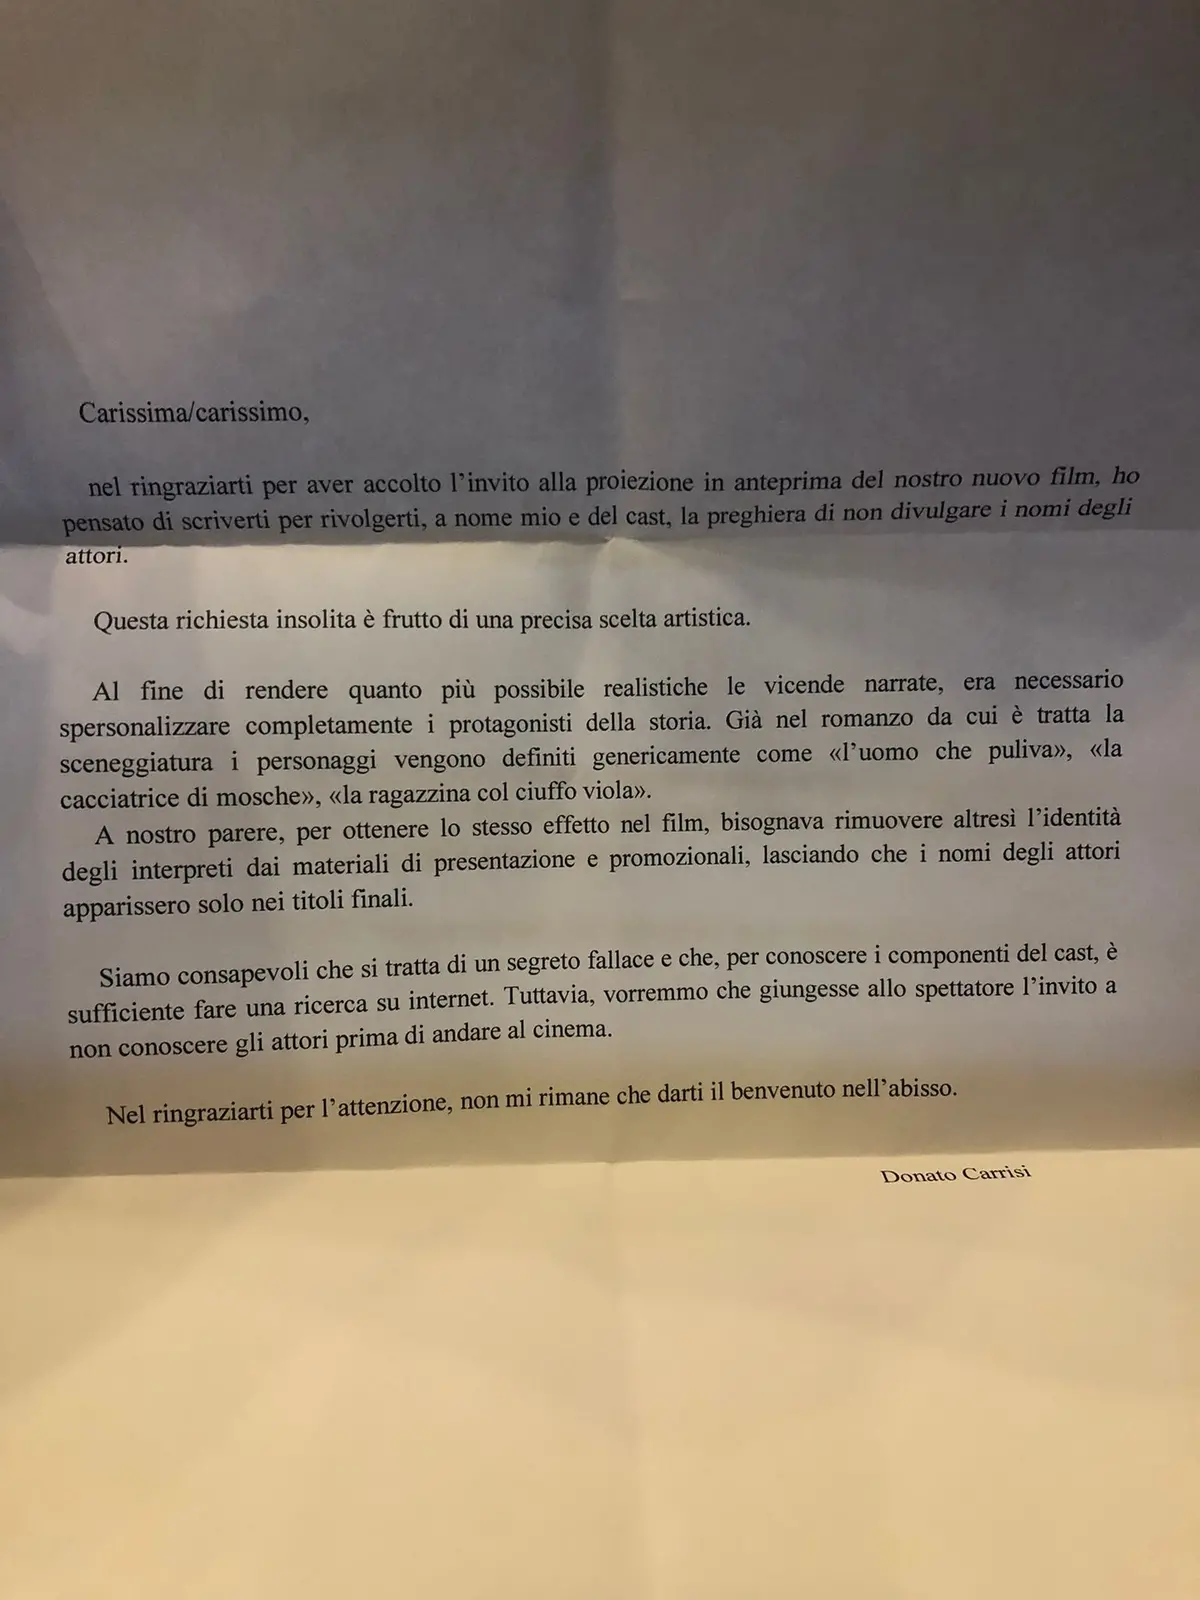 La lettera scritta da Donato Carrisi alla stampa